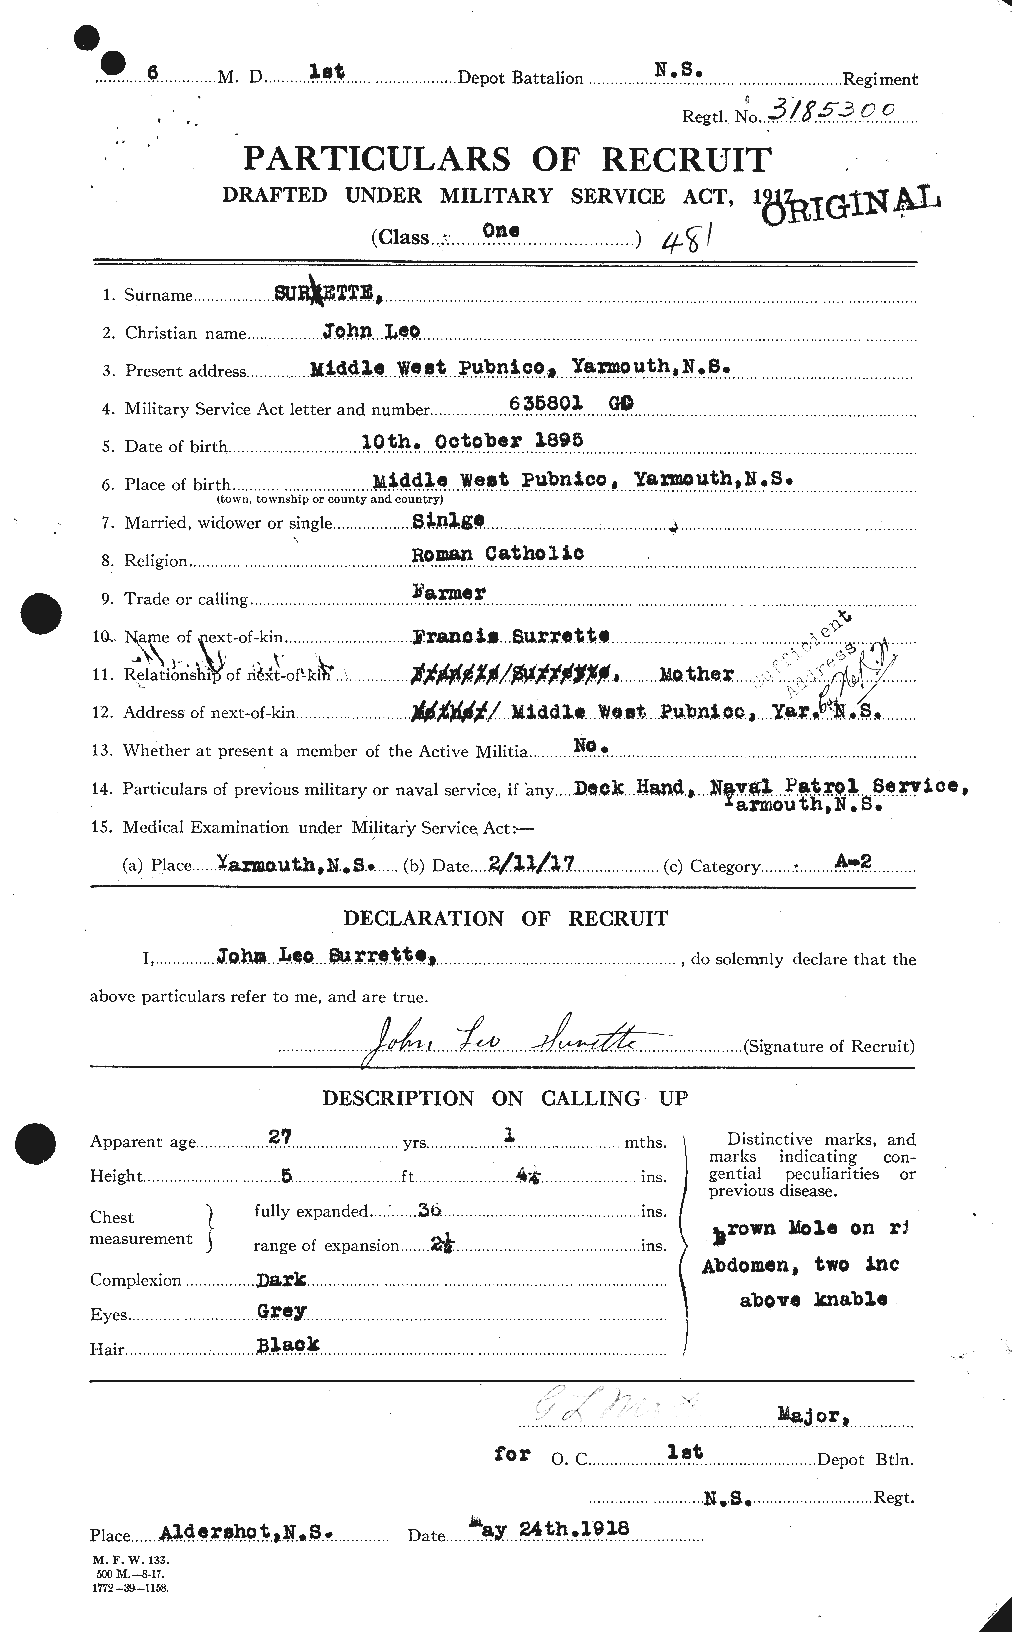 Dossiers du Personnel de la Première Guerre mondiale - CEC 623178a